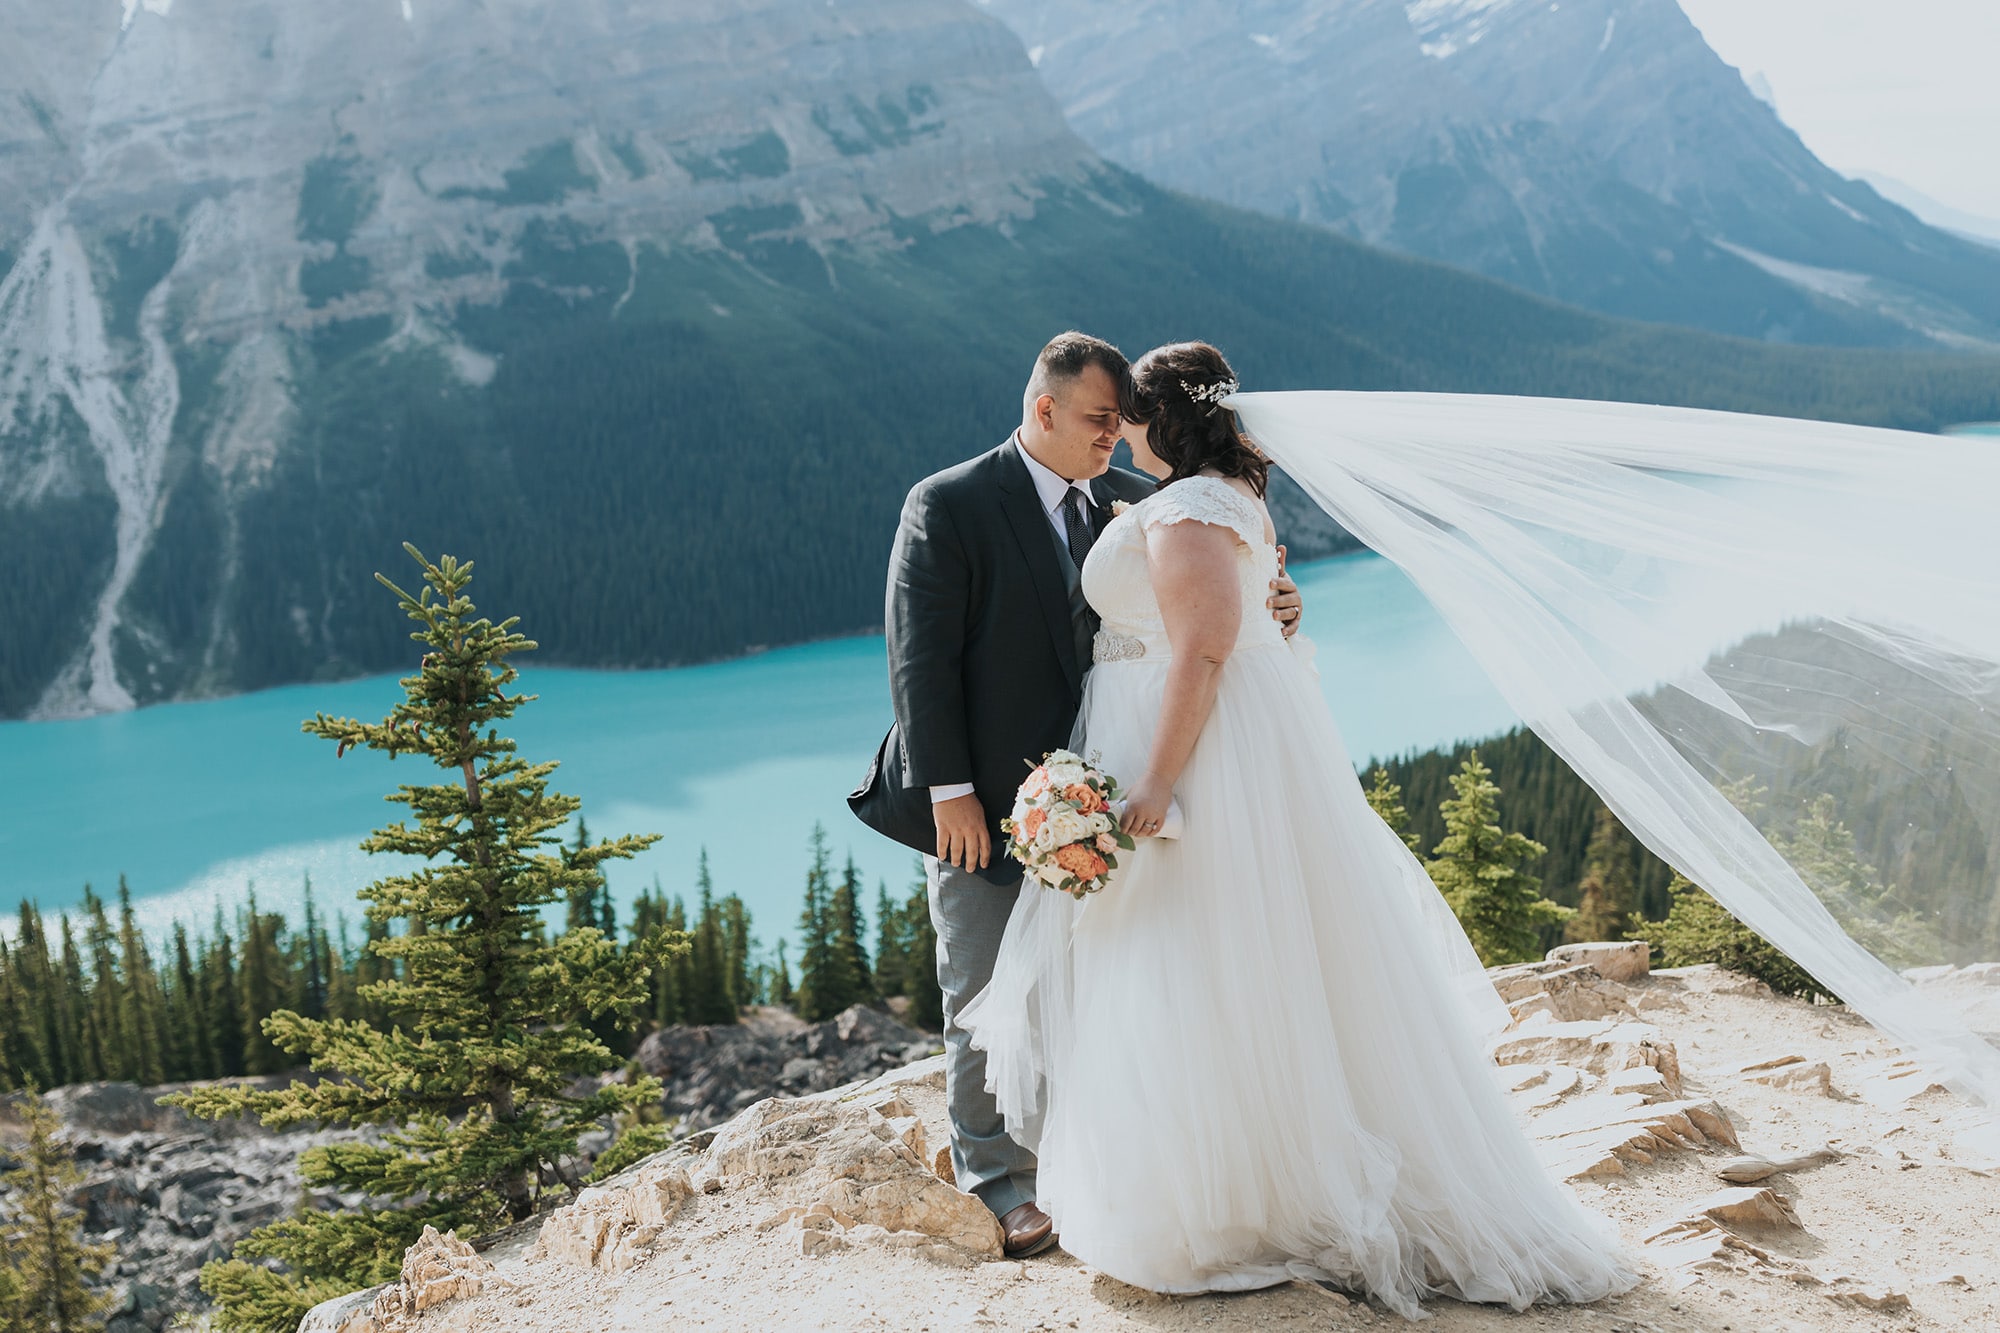 peyto lake wedding adventure elopement